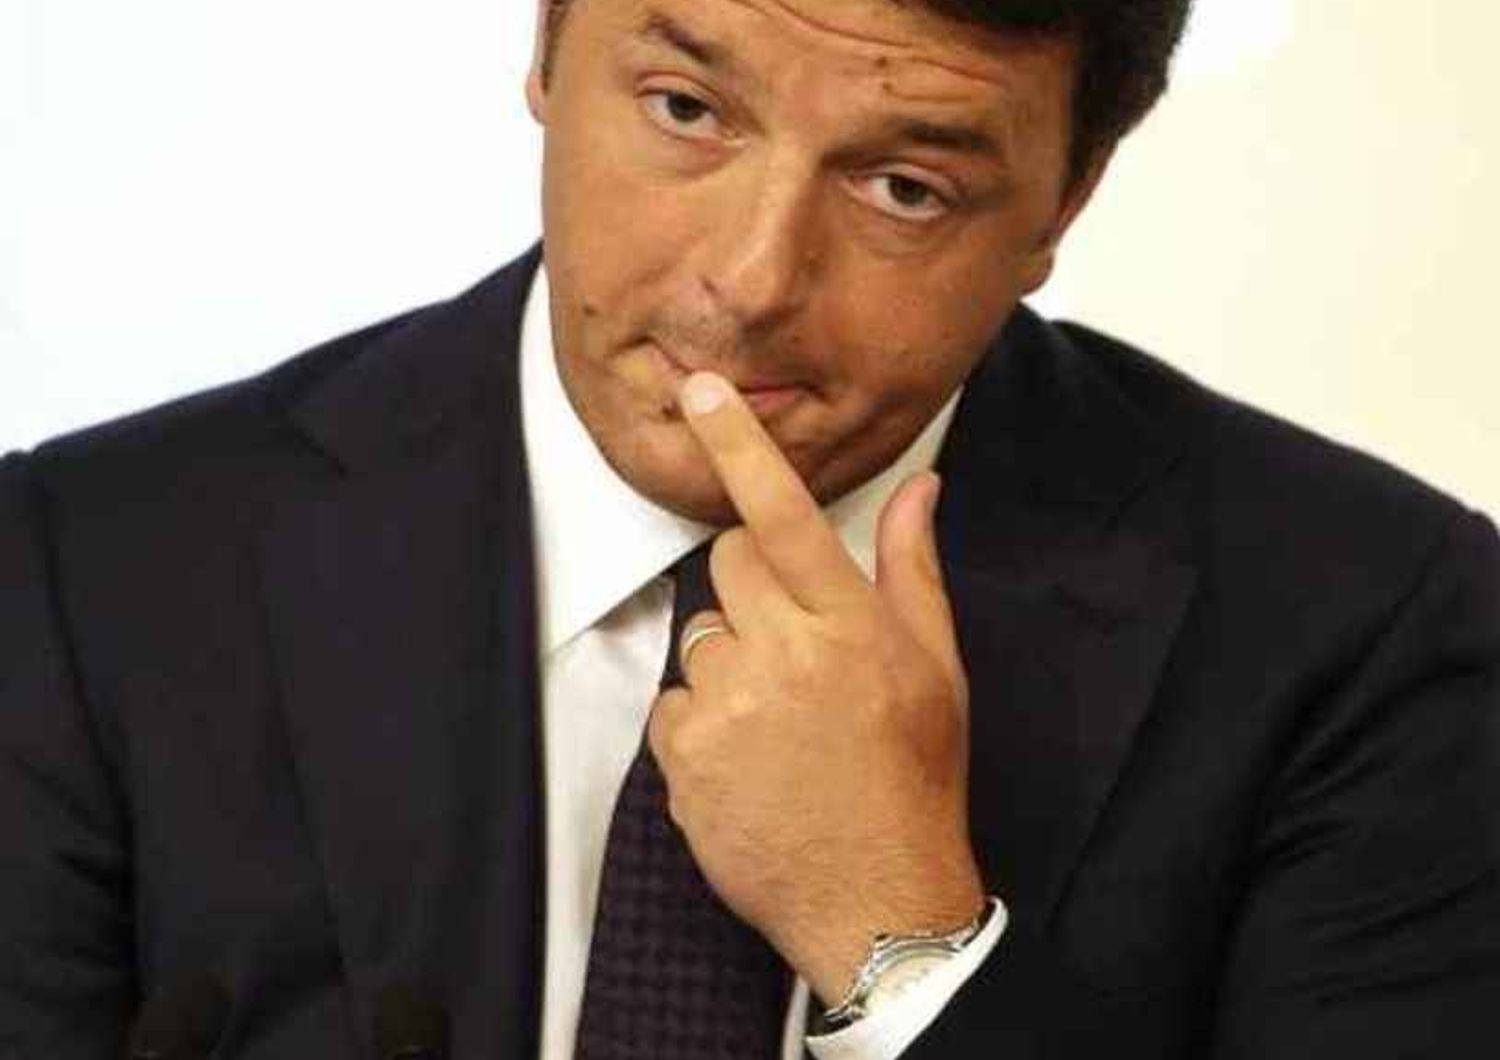 I vescovi italiani gelano Renzi "Gli slogan non portano lontano"